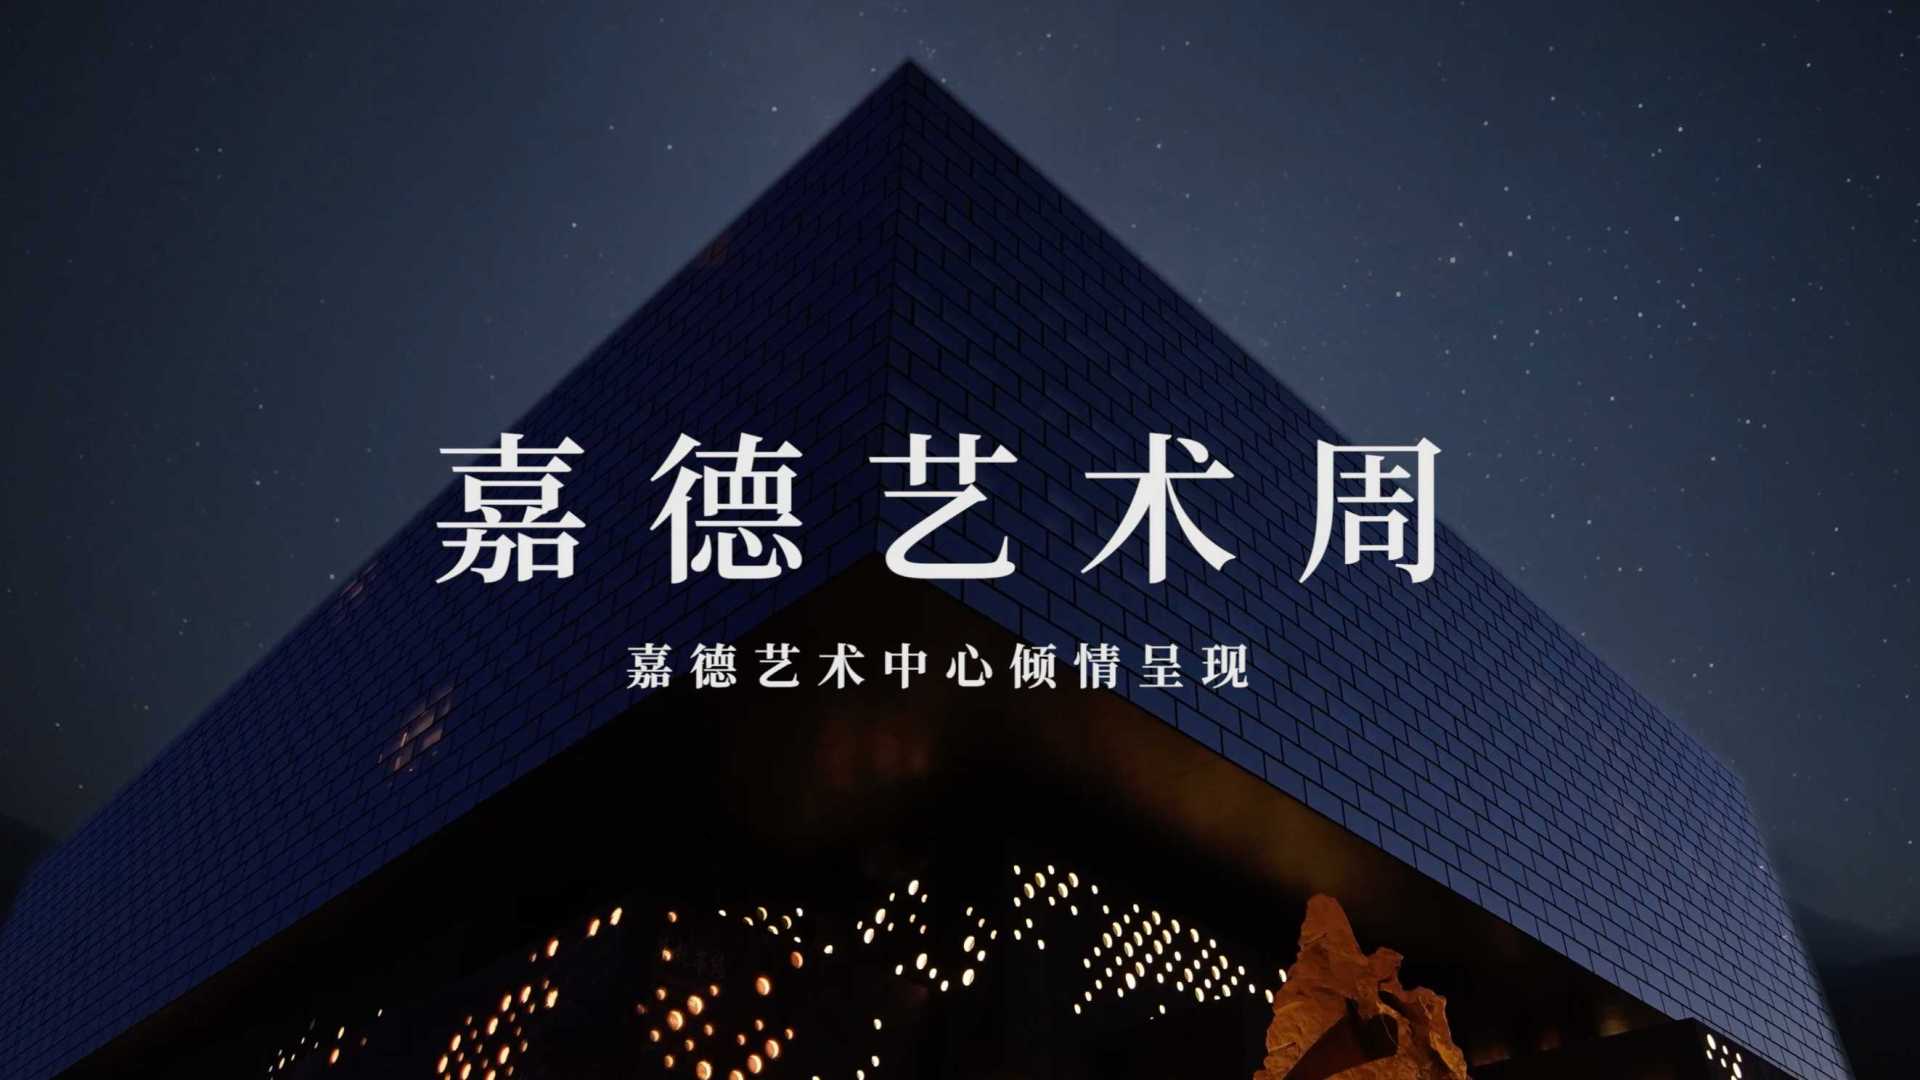 【宣传片】嘉德艺术周GFAA 2021 宣传视频「一」